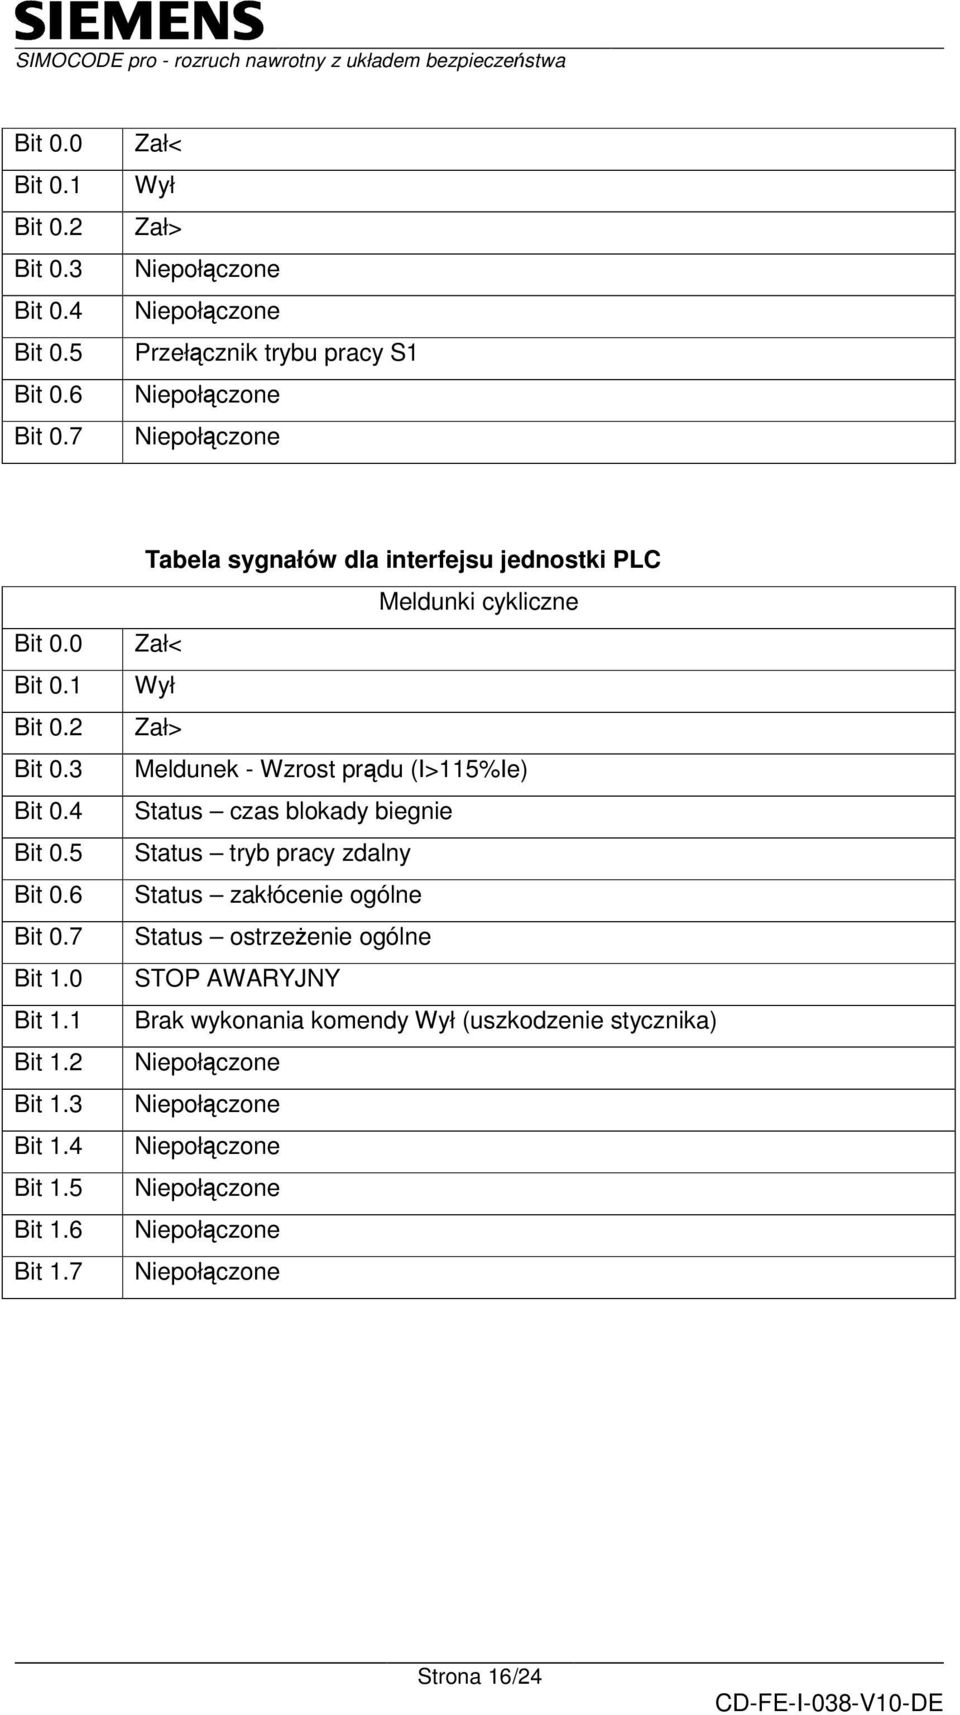 7 Tabela sygnałów dla interfejsu jednostki PLC Meldunki cykliczne Zał< Wył Zał> Meldunek - Wzrost prdu (I>115%Ie) Status czas blokady biegnie Status tryb pracy